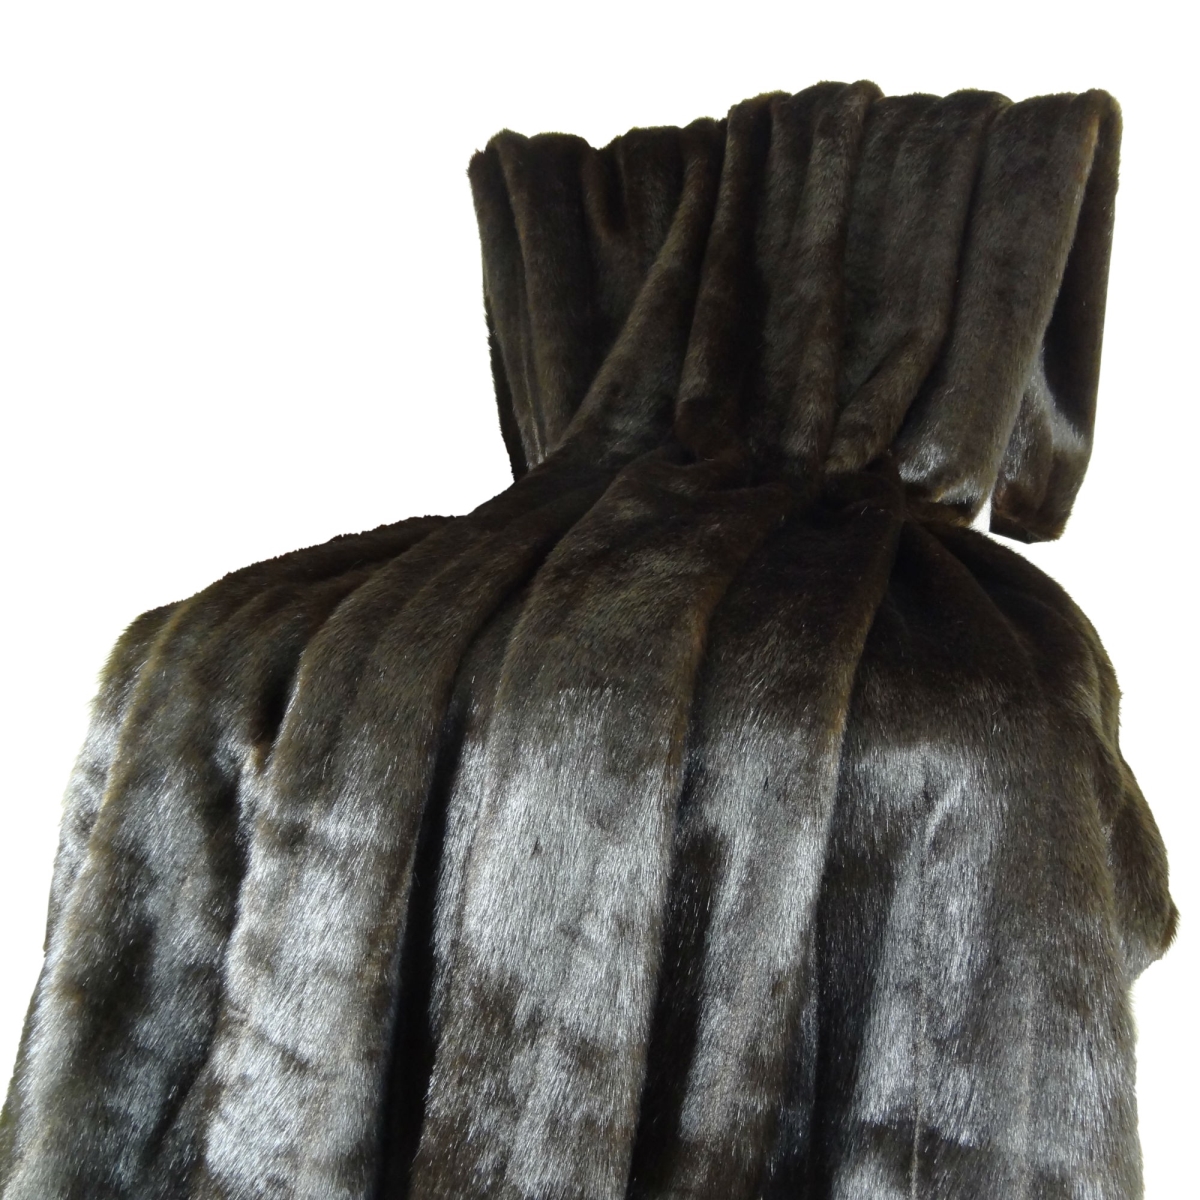 Pb16425-96x110t Tip Dyed Brown Faux Mink Fur Handmade Blanket, Dark & Brown - 96 X 110 In.